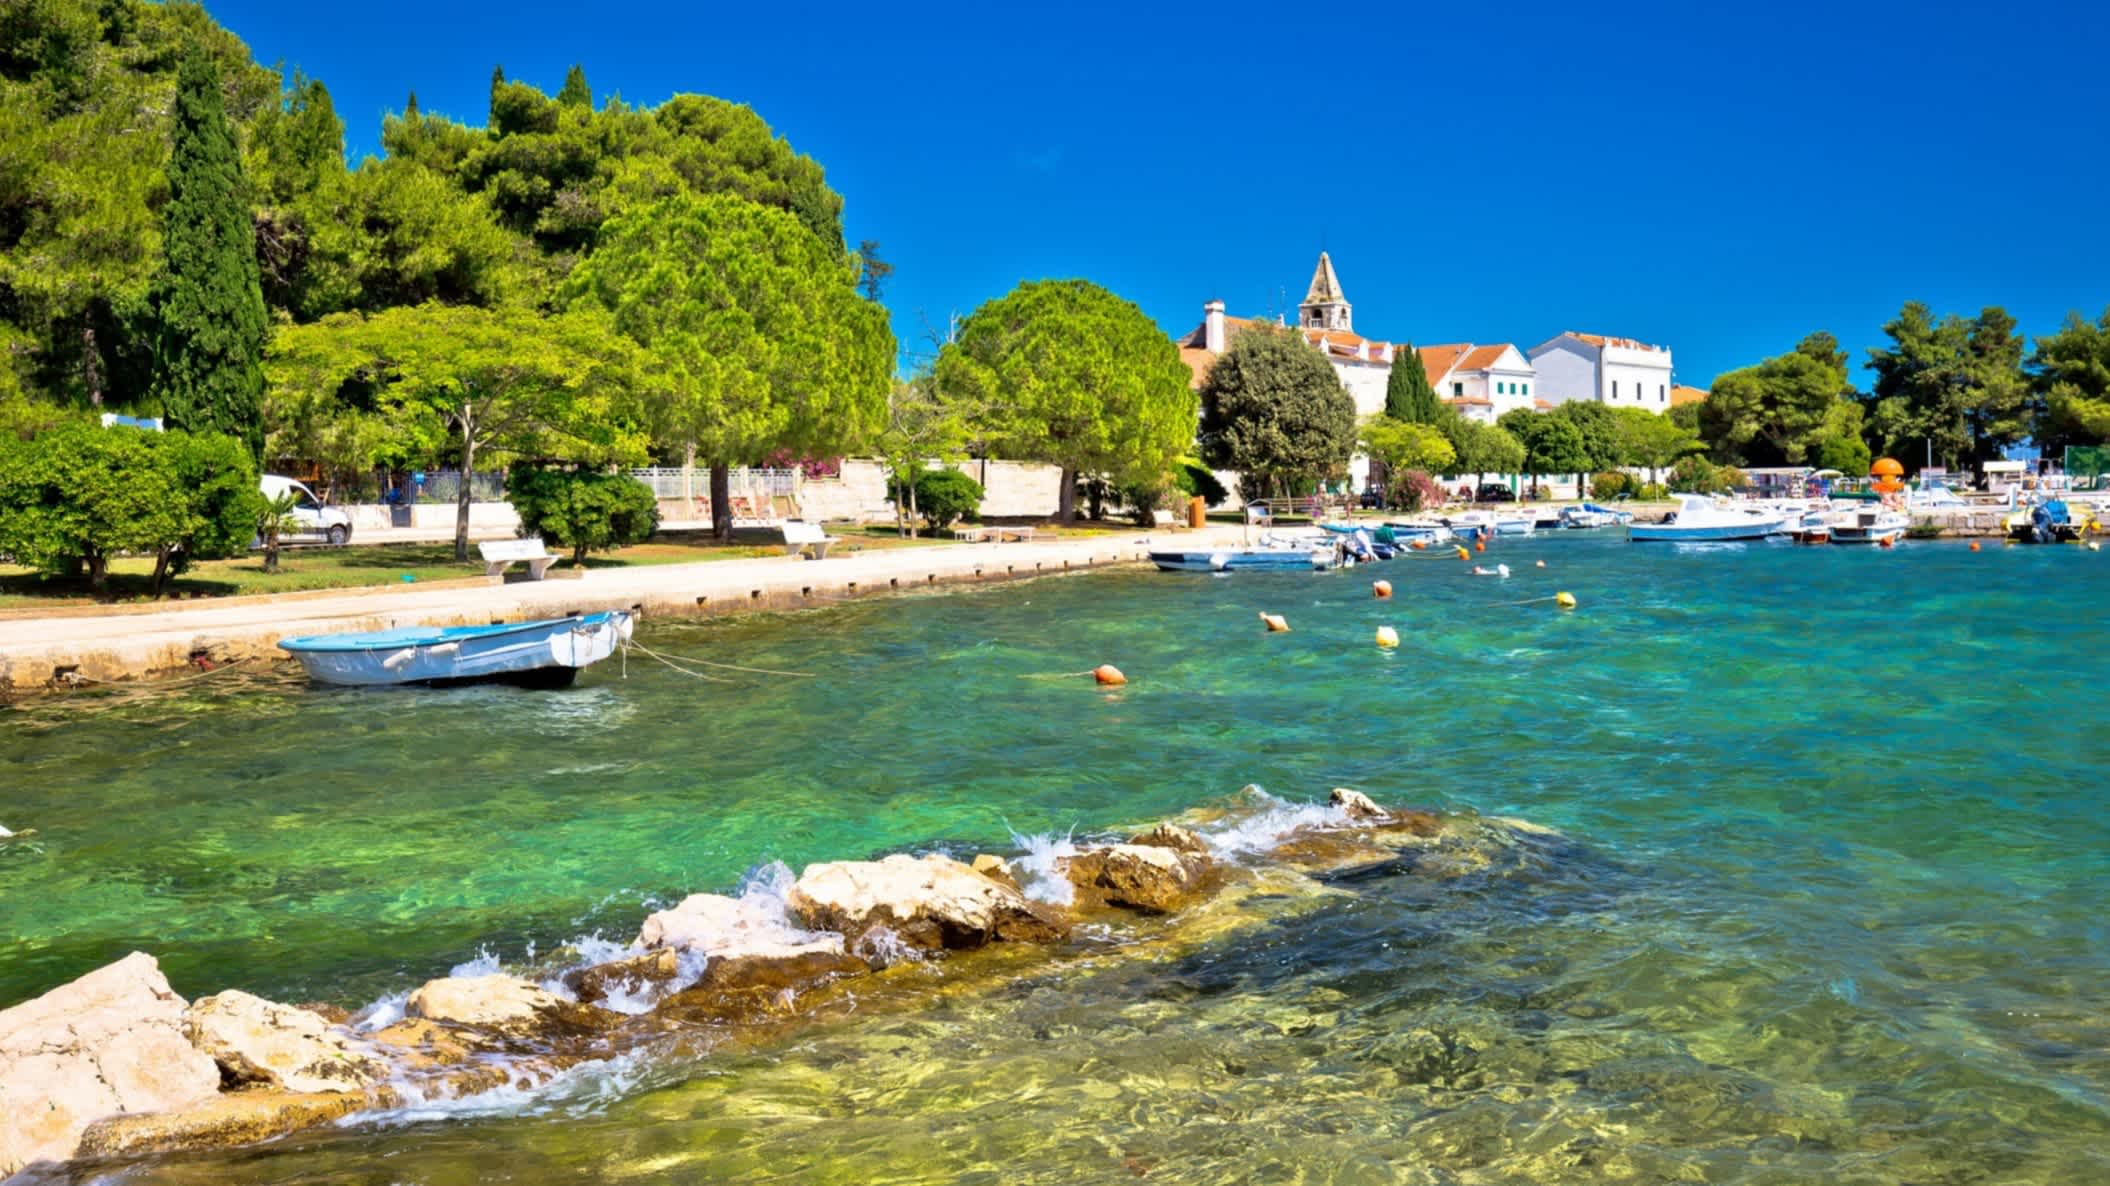 Strand von Sveti Jakov, Dubrovnik, Kroatien mit Blick auf das Wasser, die Stadt und ein Boot im Wasser.